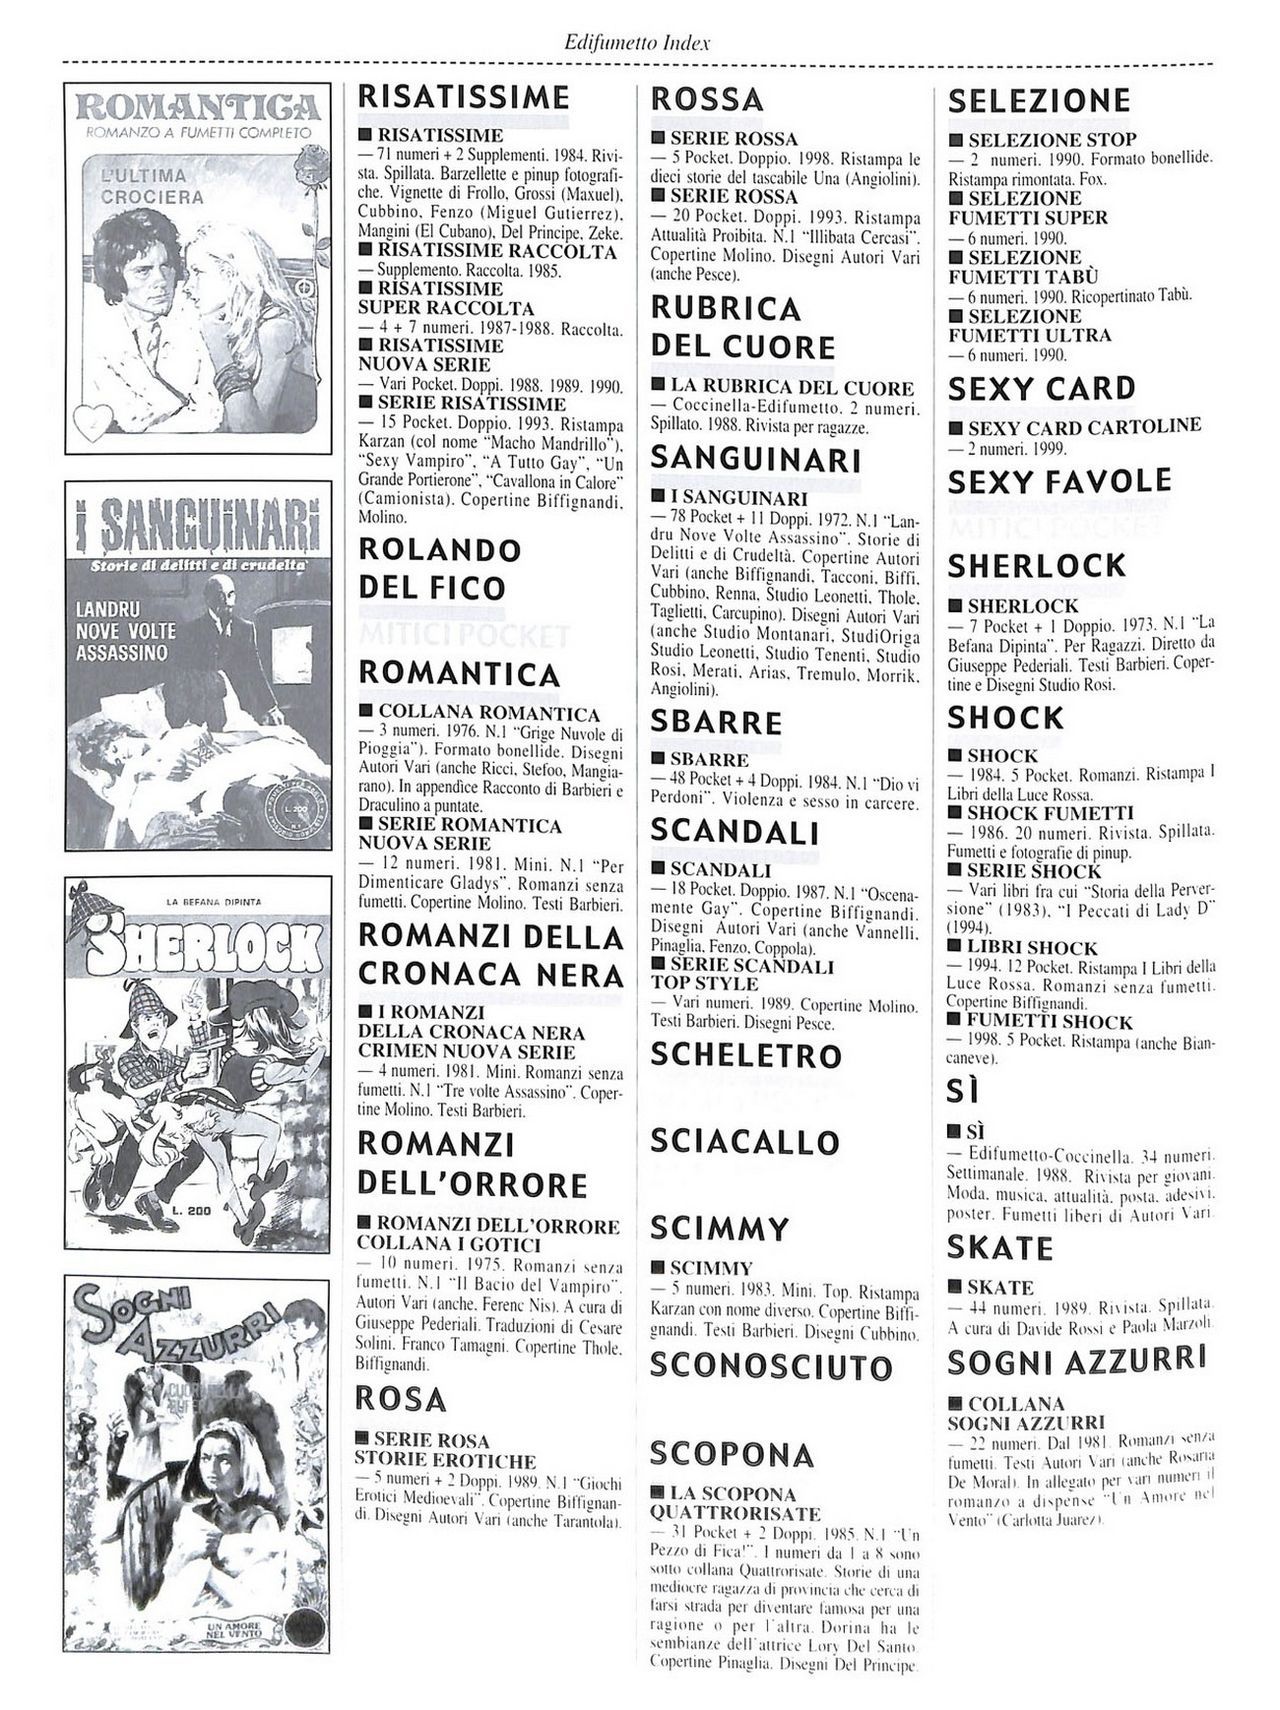 EdiFumetto index (Graziano Origa, 2002) [Italian] 87